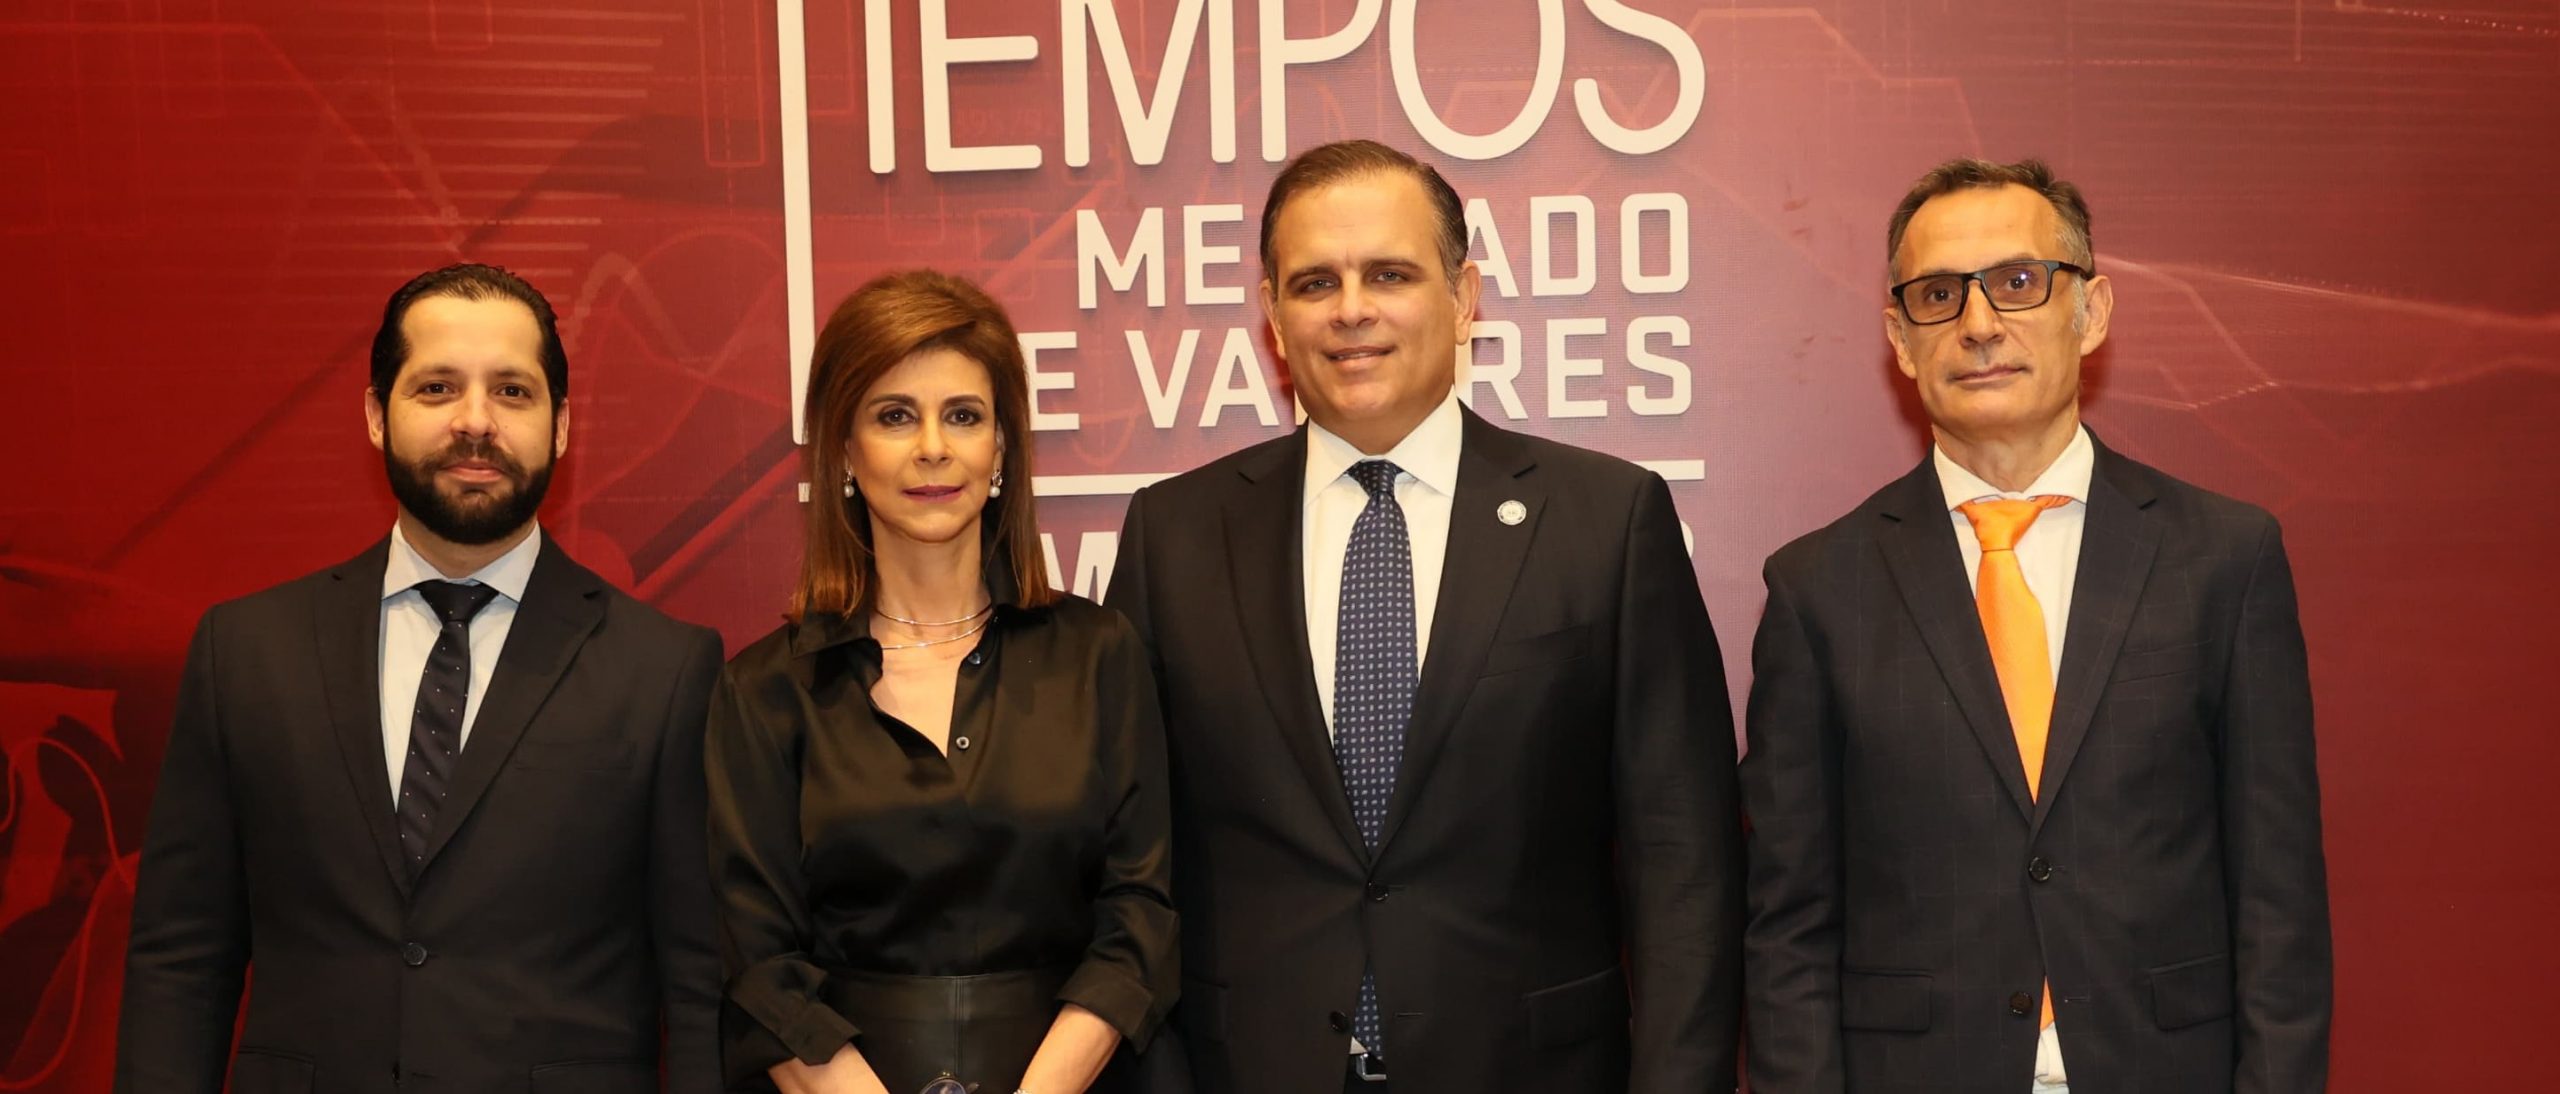 Vicente destaca avance del País  en la ruta de la inversión